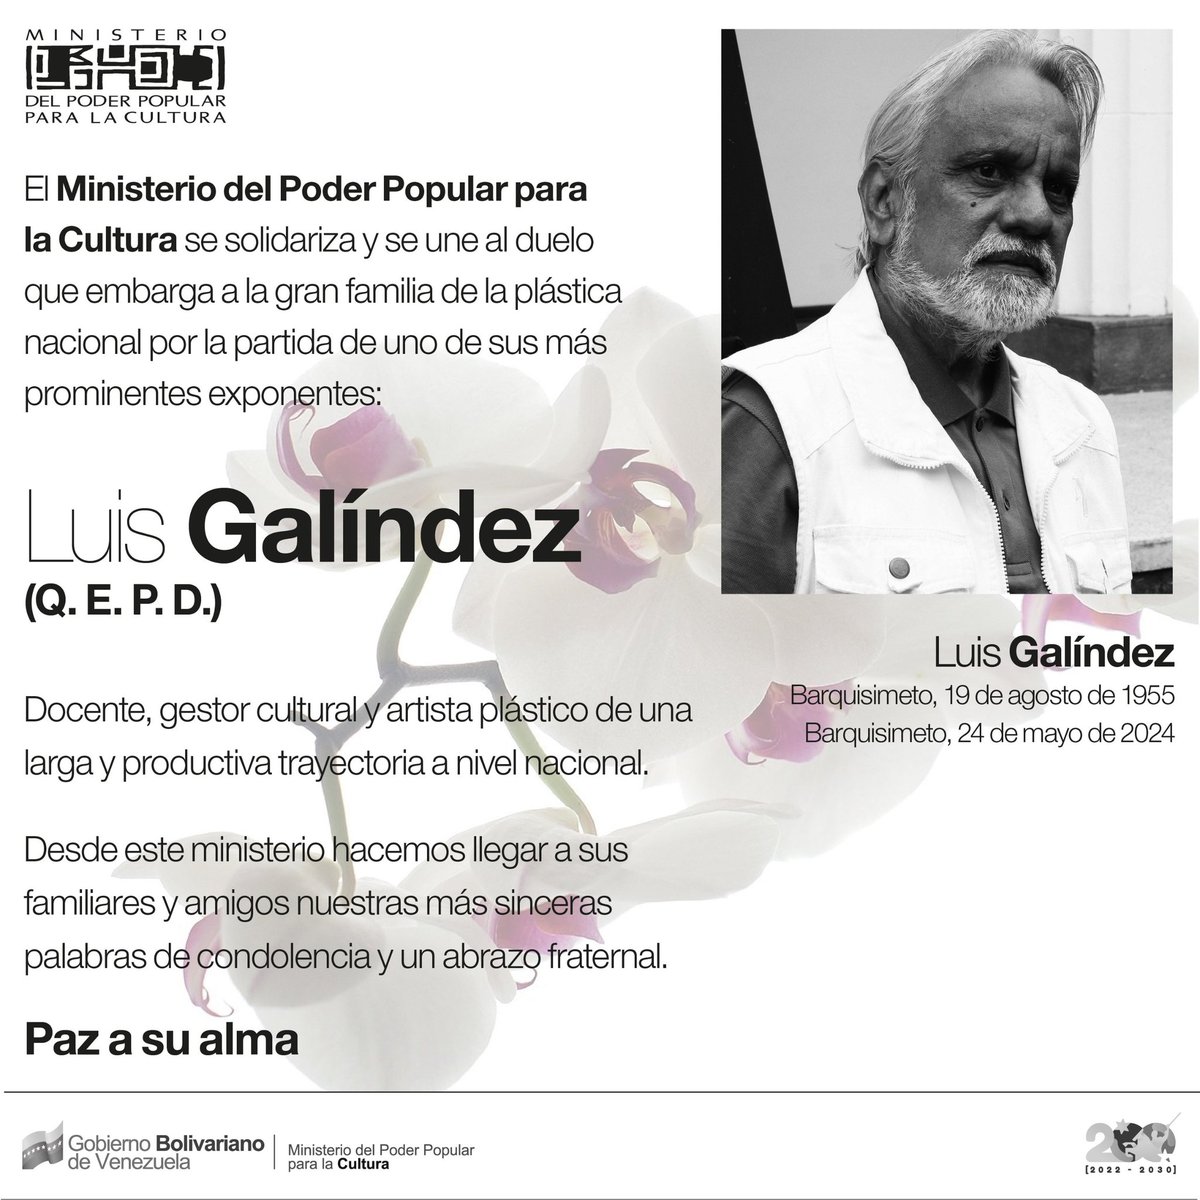 #26May | Nos unimos #Todasadentro en solidaridad a la familia y amigos de Luis Galíndez, artista plástico y docente, que partió físicamente este viernes 24 de mayo. 
__
@NicolasMaduro 
@VillegasPoljak